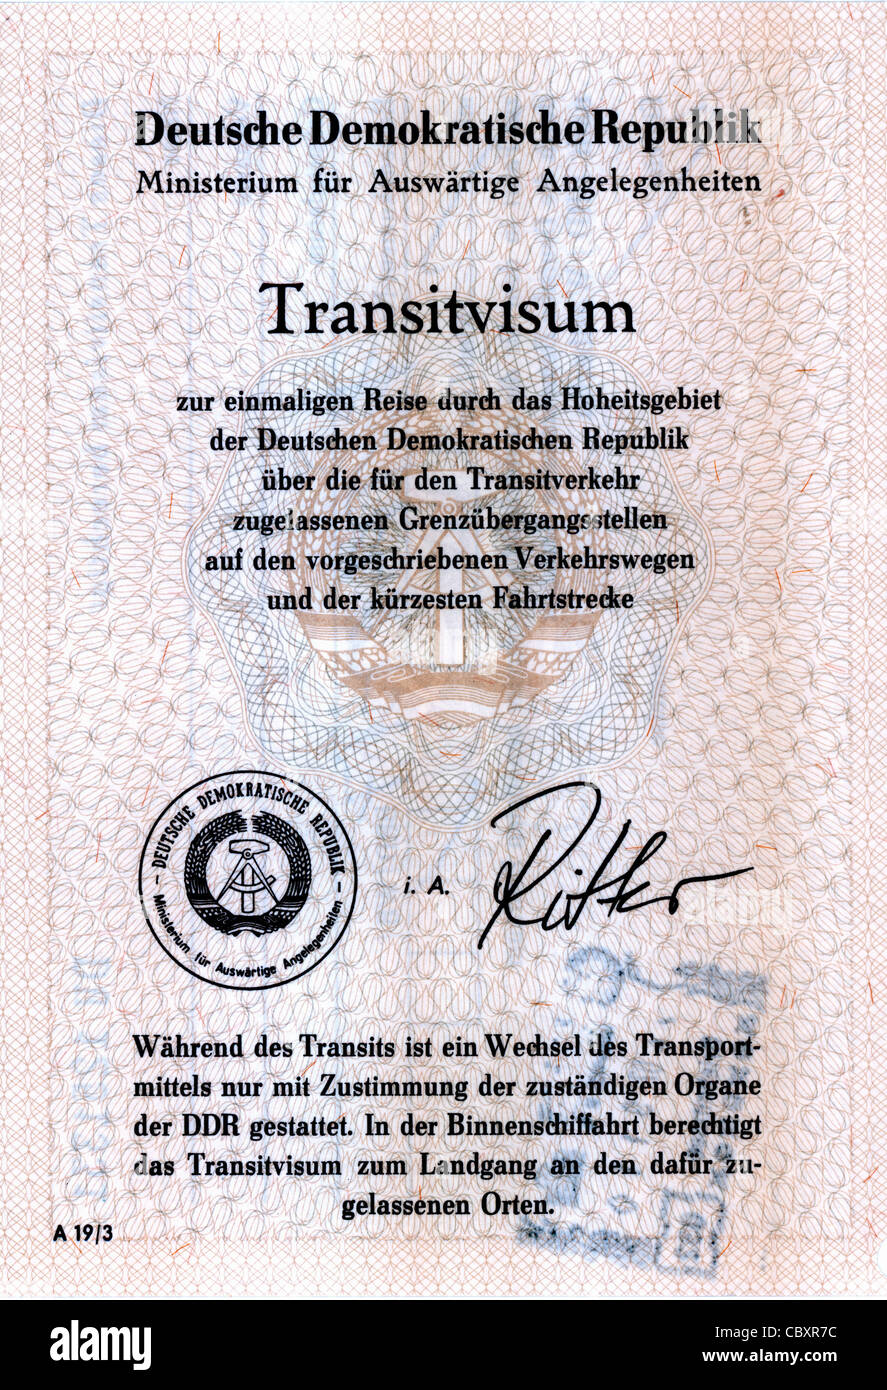 Transitvisum der Deutschen Demokratischen Republik für eine Reise auf den Transit durch die DDR. Stockfoto